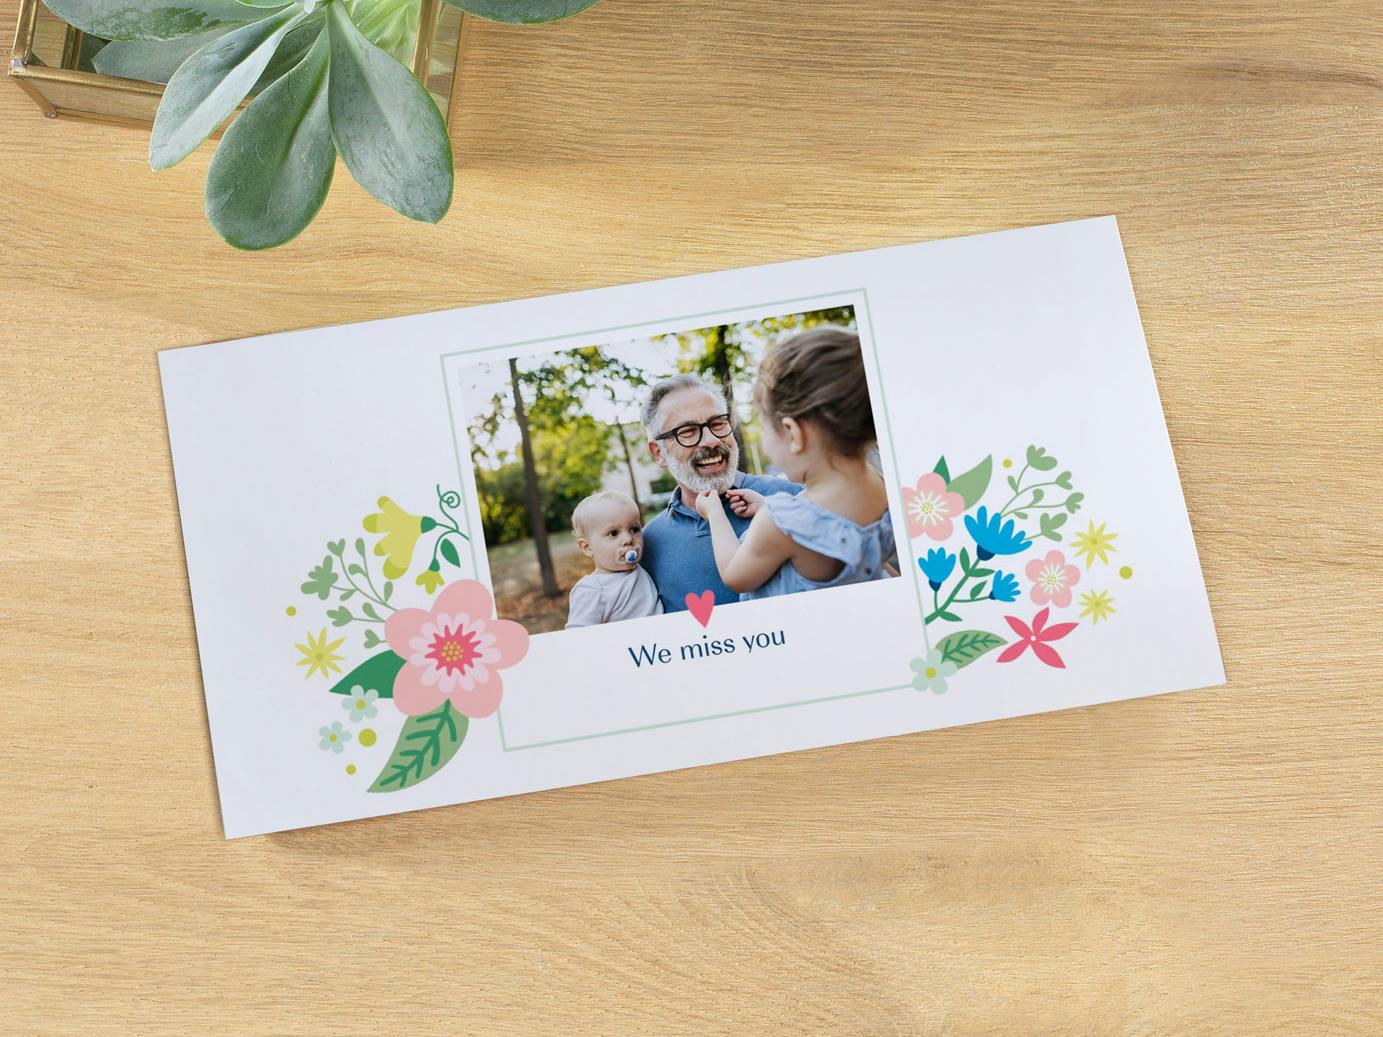 Fotogrußkarte mit einem Familienfoto und dem Text "Liebe Grüße"